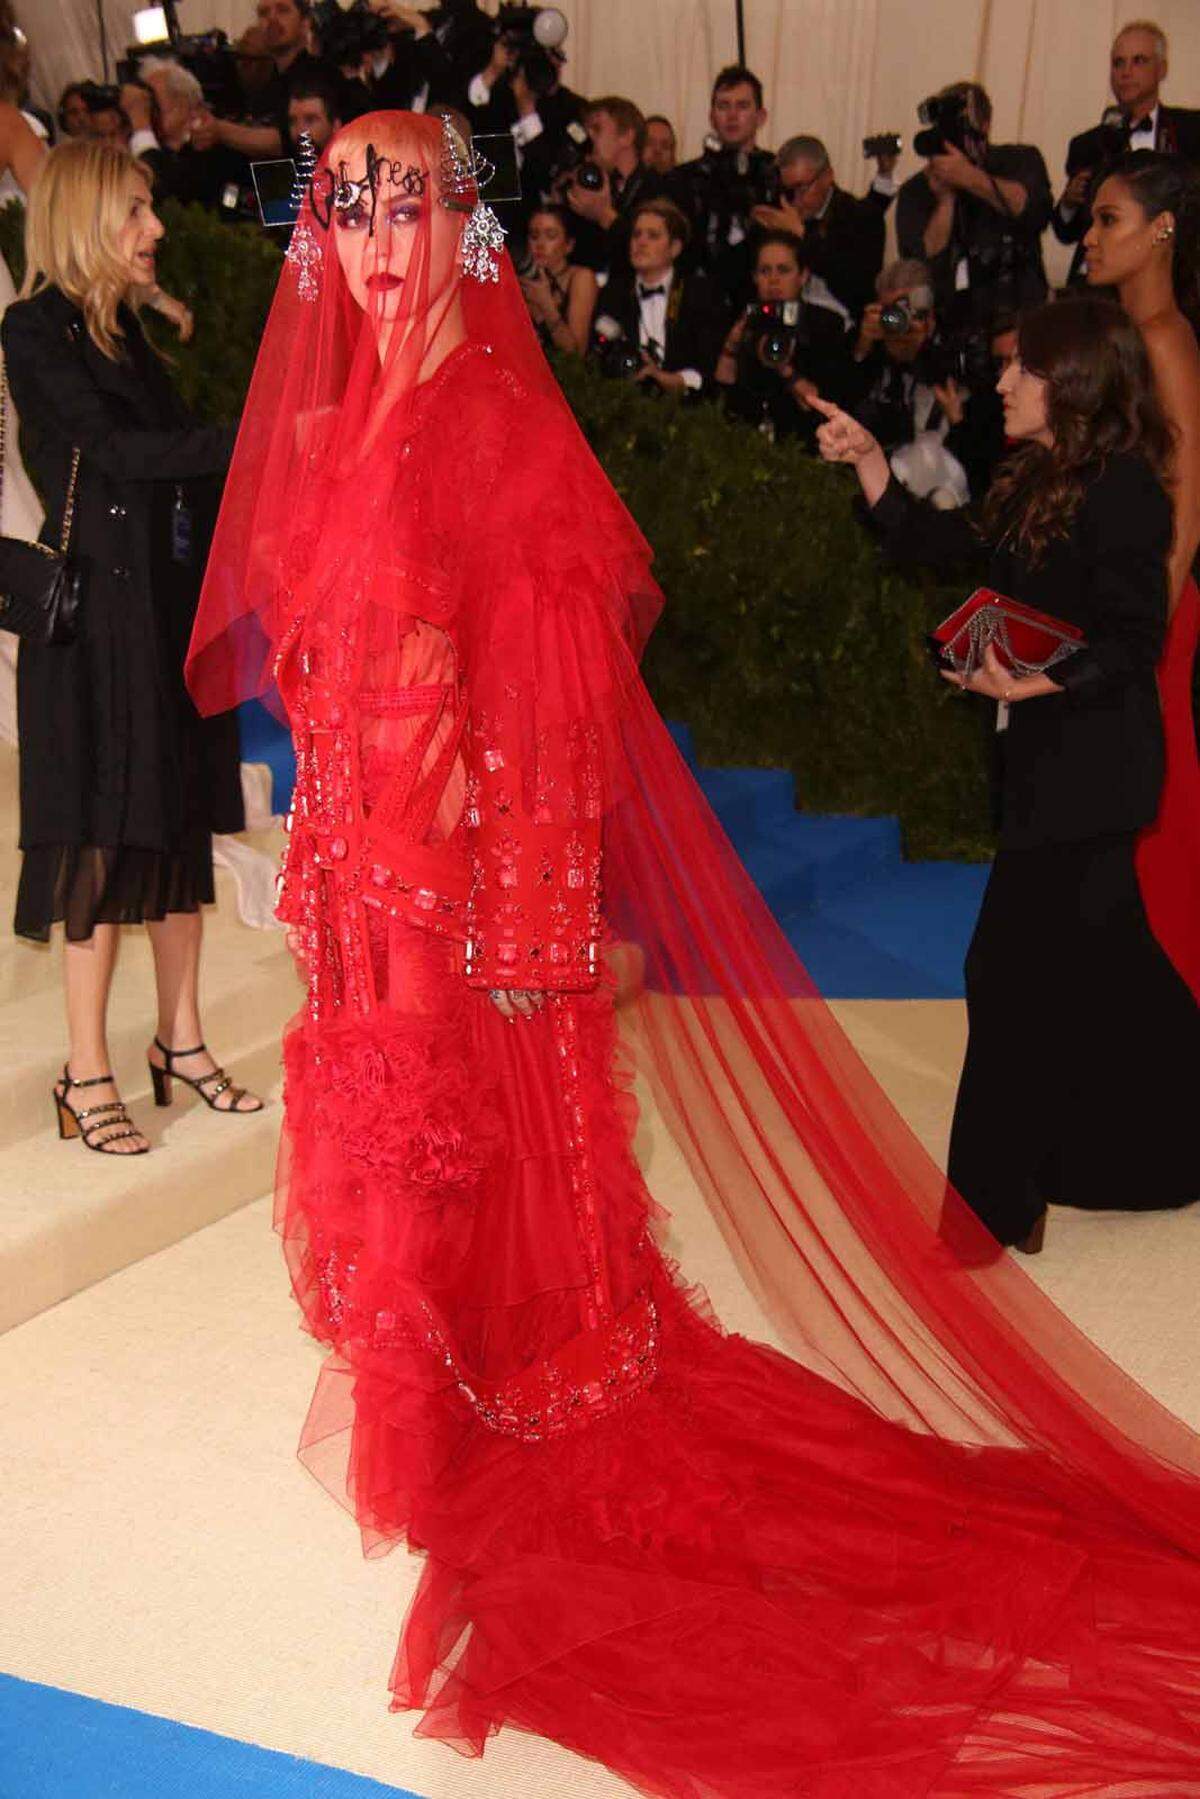 Ebenfalls zur Met-Gala erschien Katy Perry. Die Sängerin trug ein üppiges rotes Kleid, hätte aber besser auf den Gesichtsschleier verzichtet.